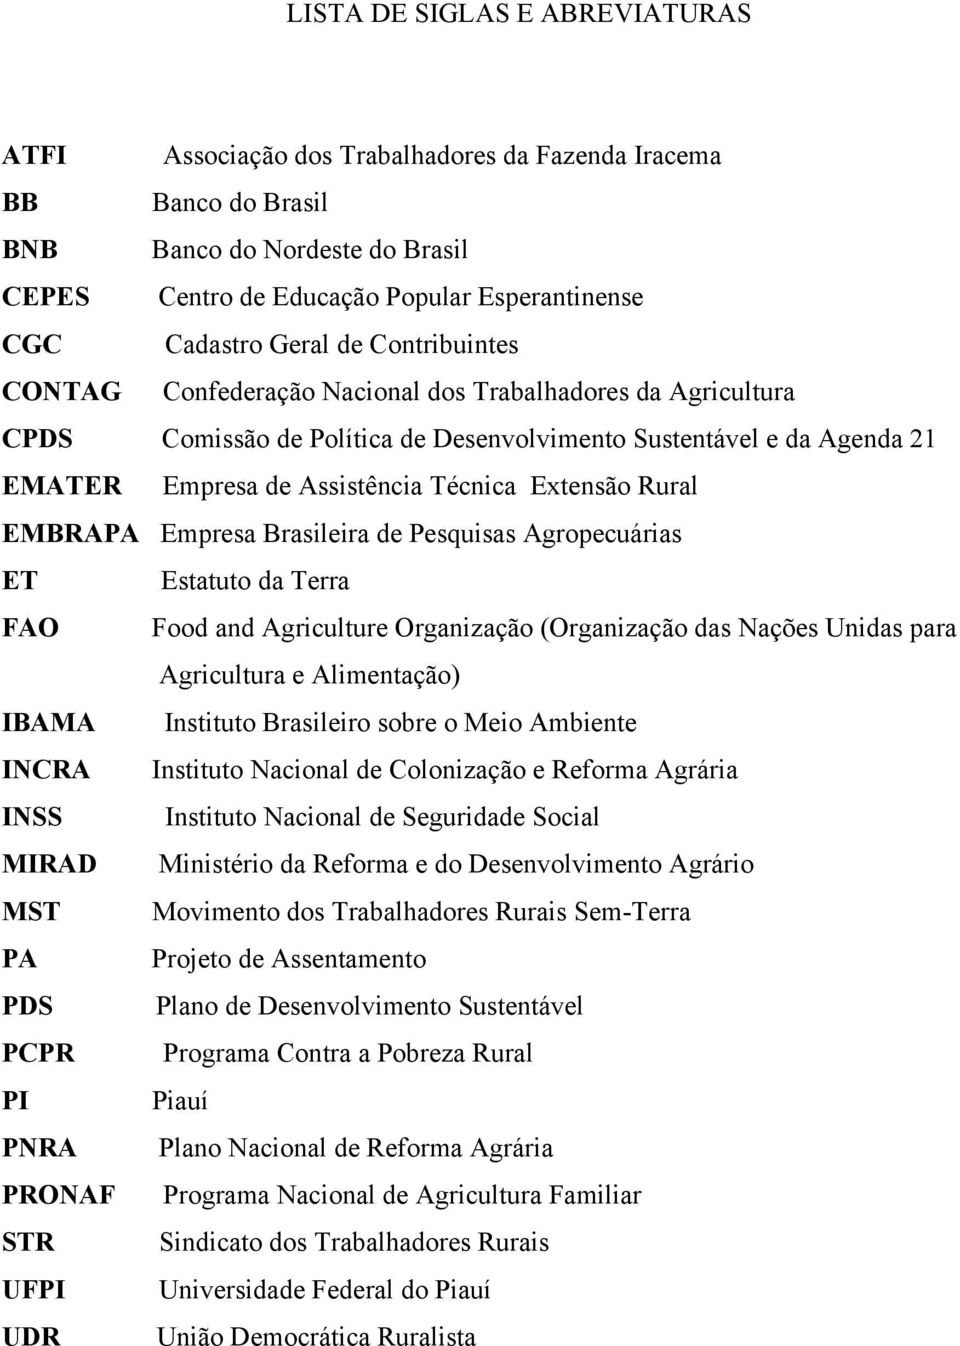 Extensão Rural EMBRAPA Empresa Brasileira de Pesquisas Agropecuárias ET Estatuto da Terra FAO Food and Agriculture Organização (Organização das Nações Unidas para Agricultura e Alimentação) IBAMA